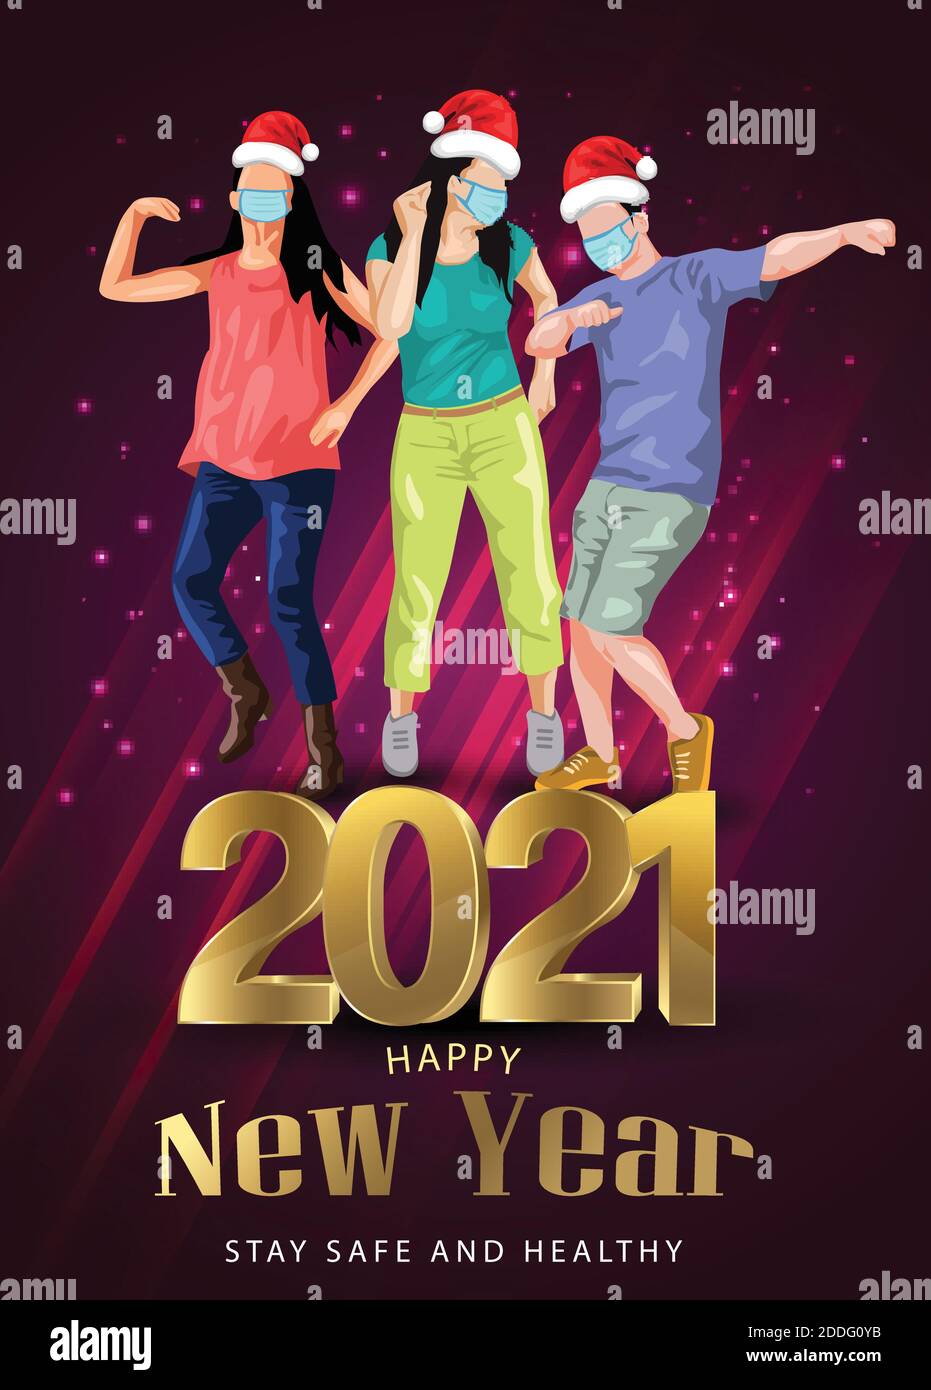 Happy New Year Dance Night Party Flyer Design mit Gruppe von Menschen tanzen mit santa Hand und tragen chirurgische Maske. Coronavirus, covid-19 Konzept. v Stock Vektor